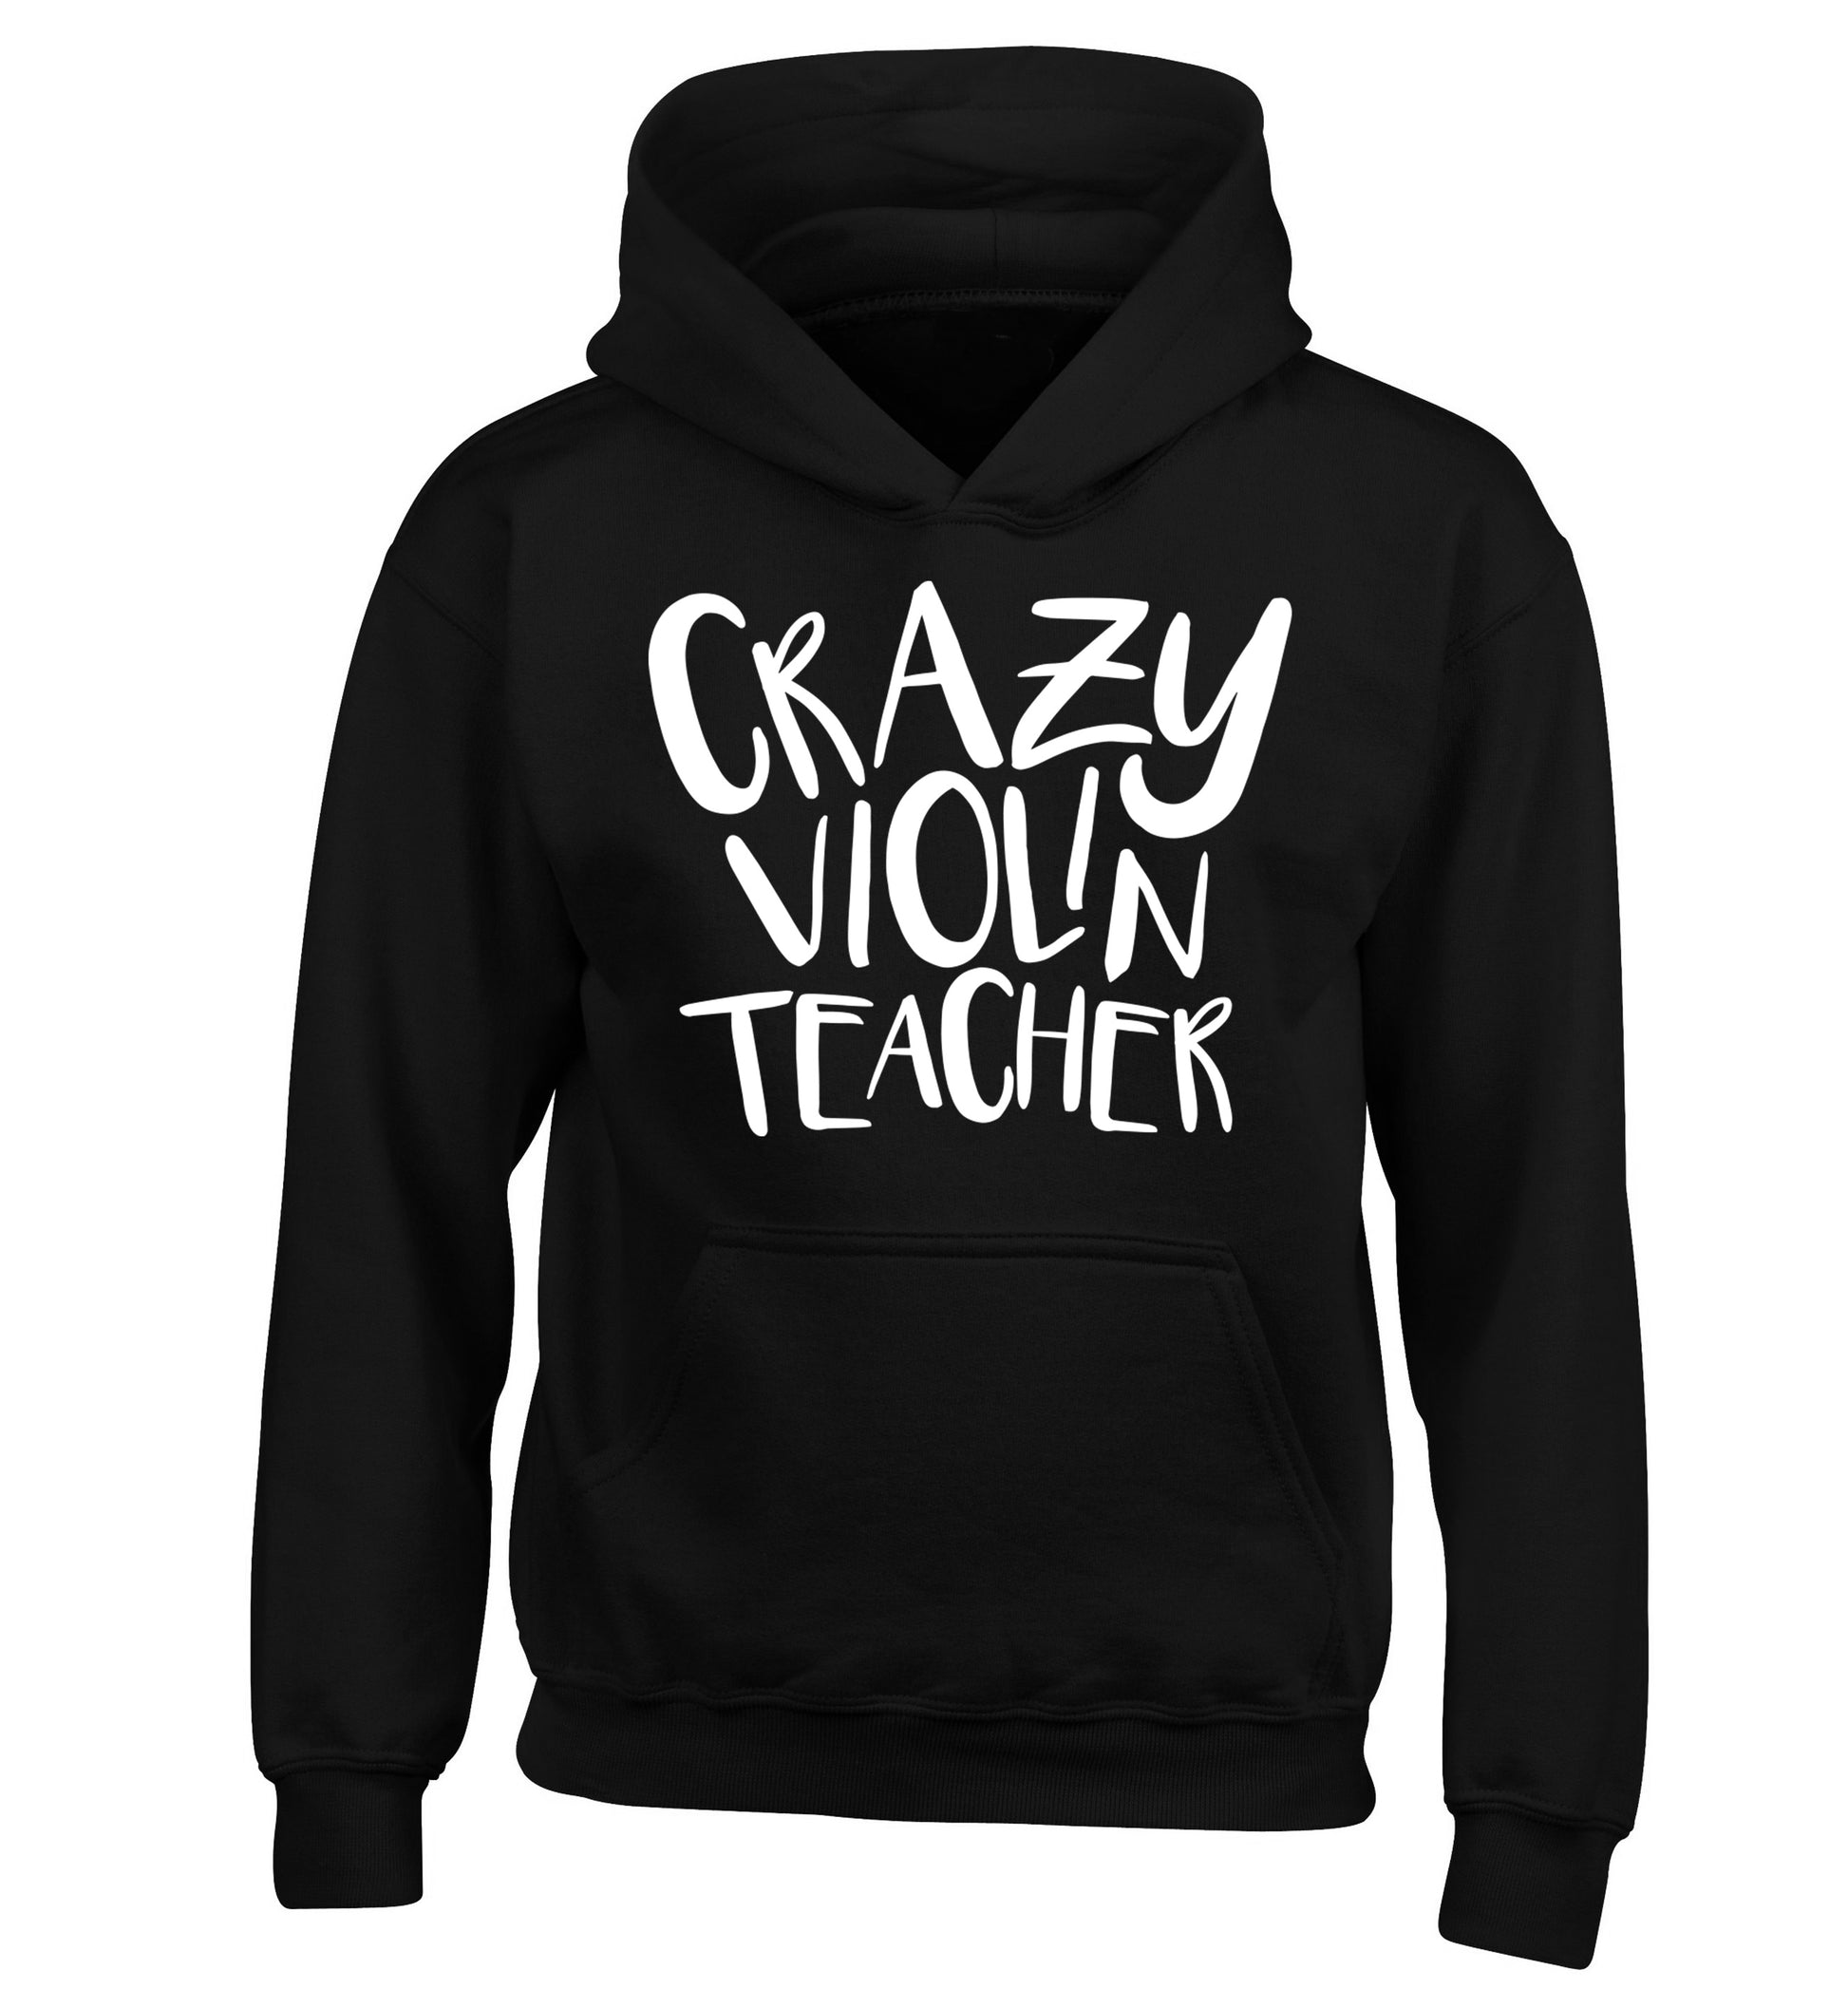 Crazy violin teacher children's black hoodie 12-13 Years